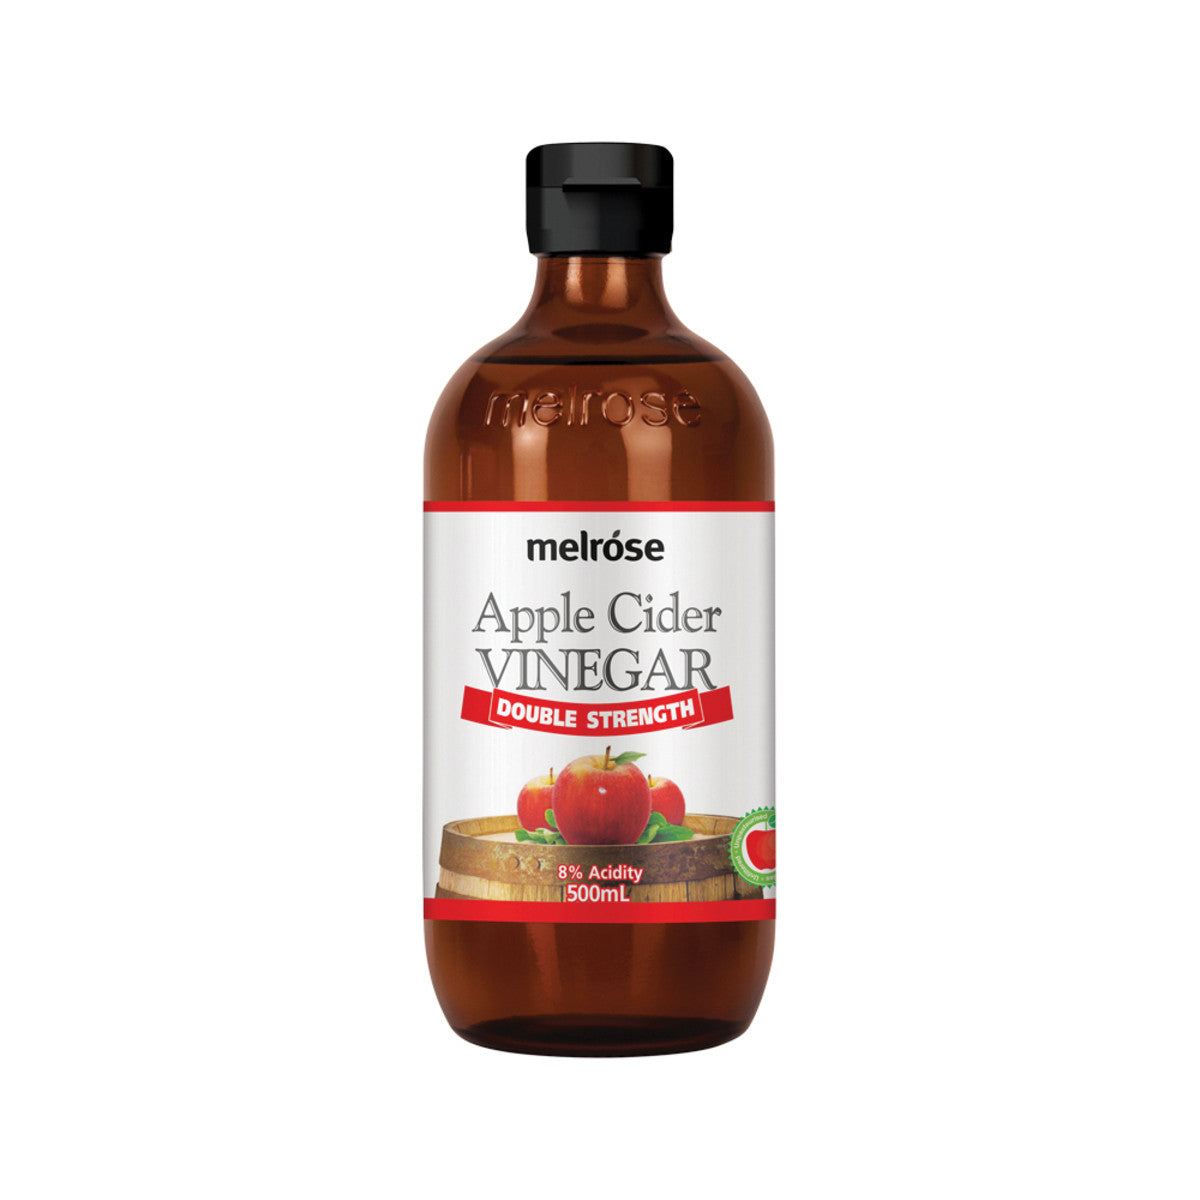 Melrose Apple Cider Vinegar Double Strength 500ml-The Living Co.